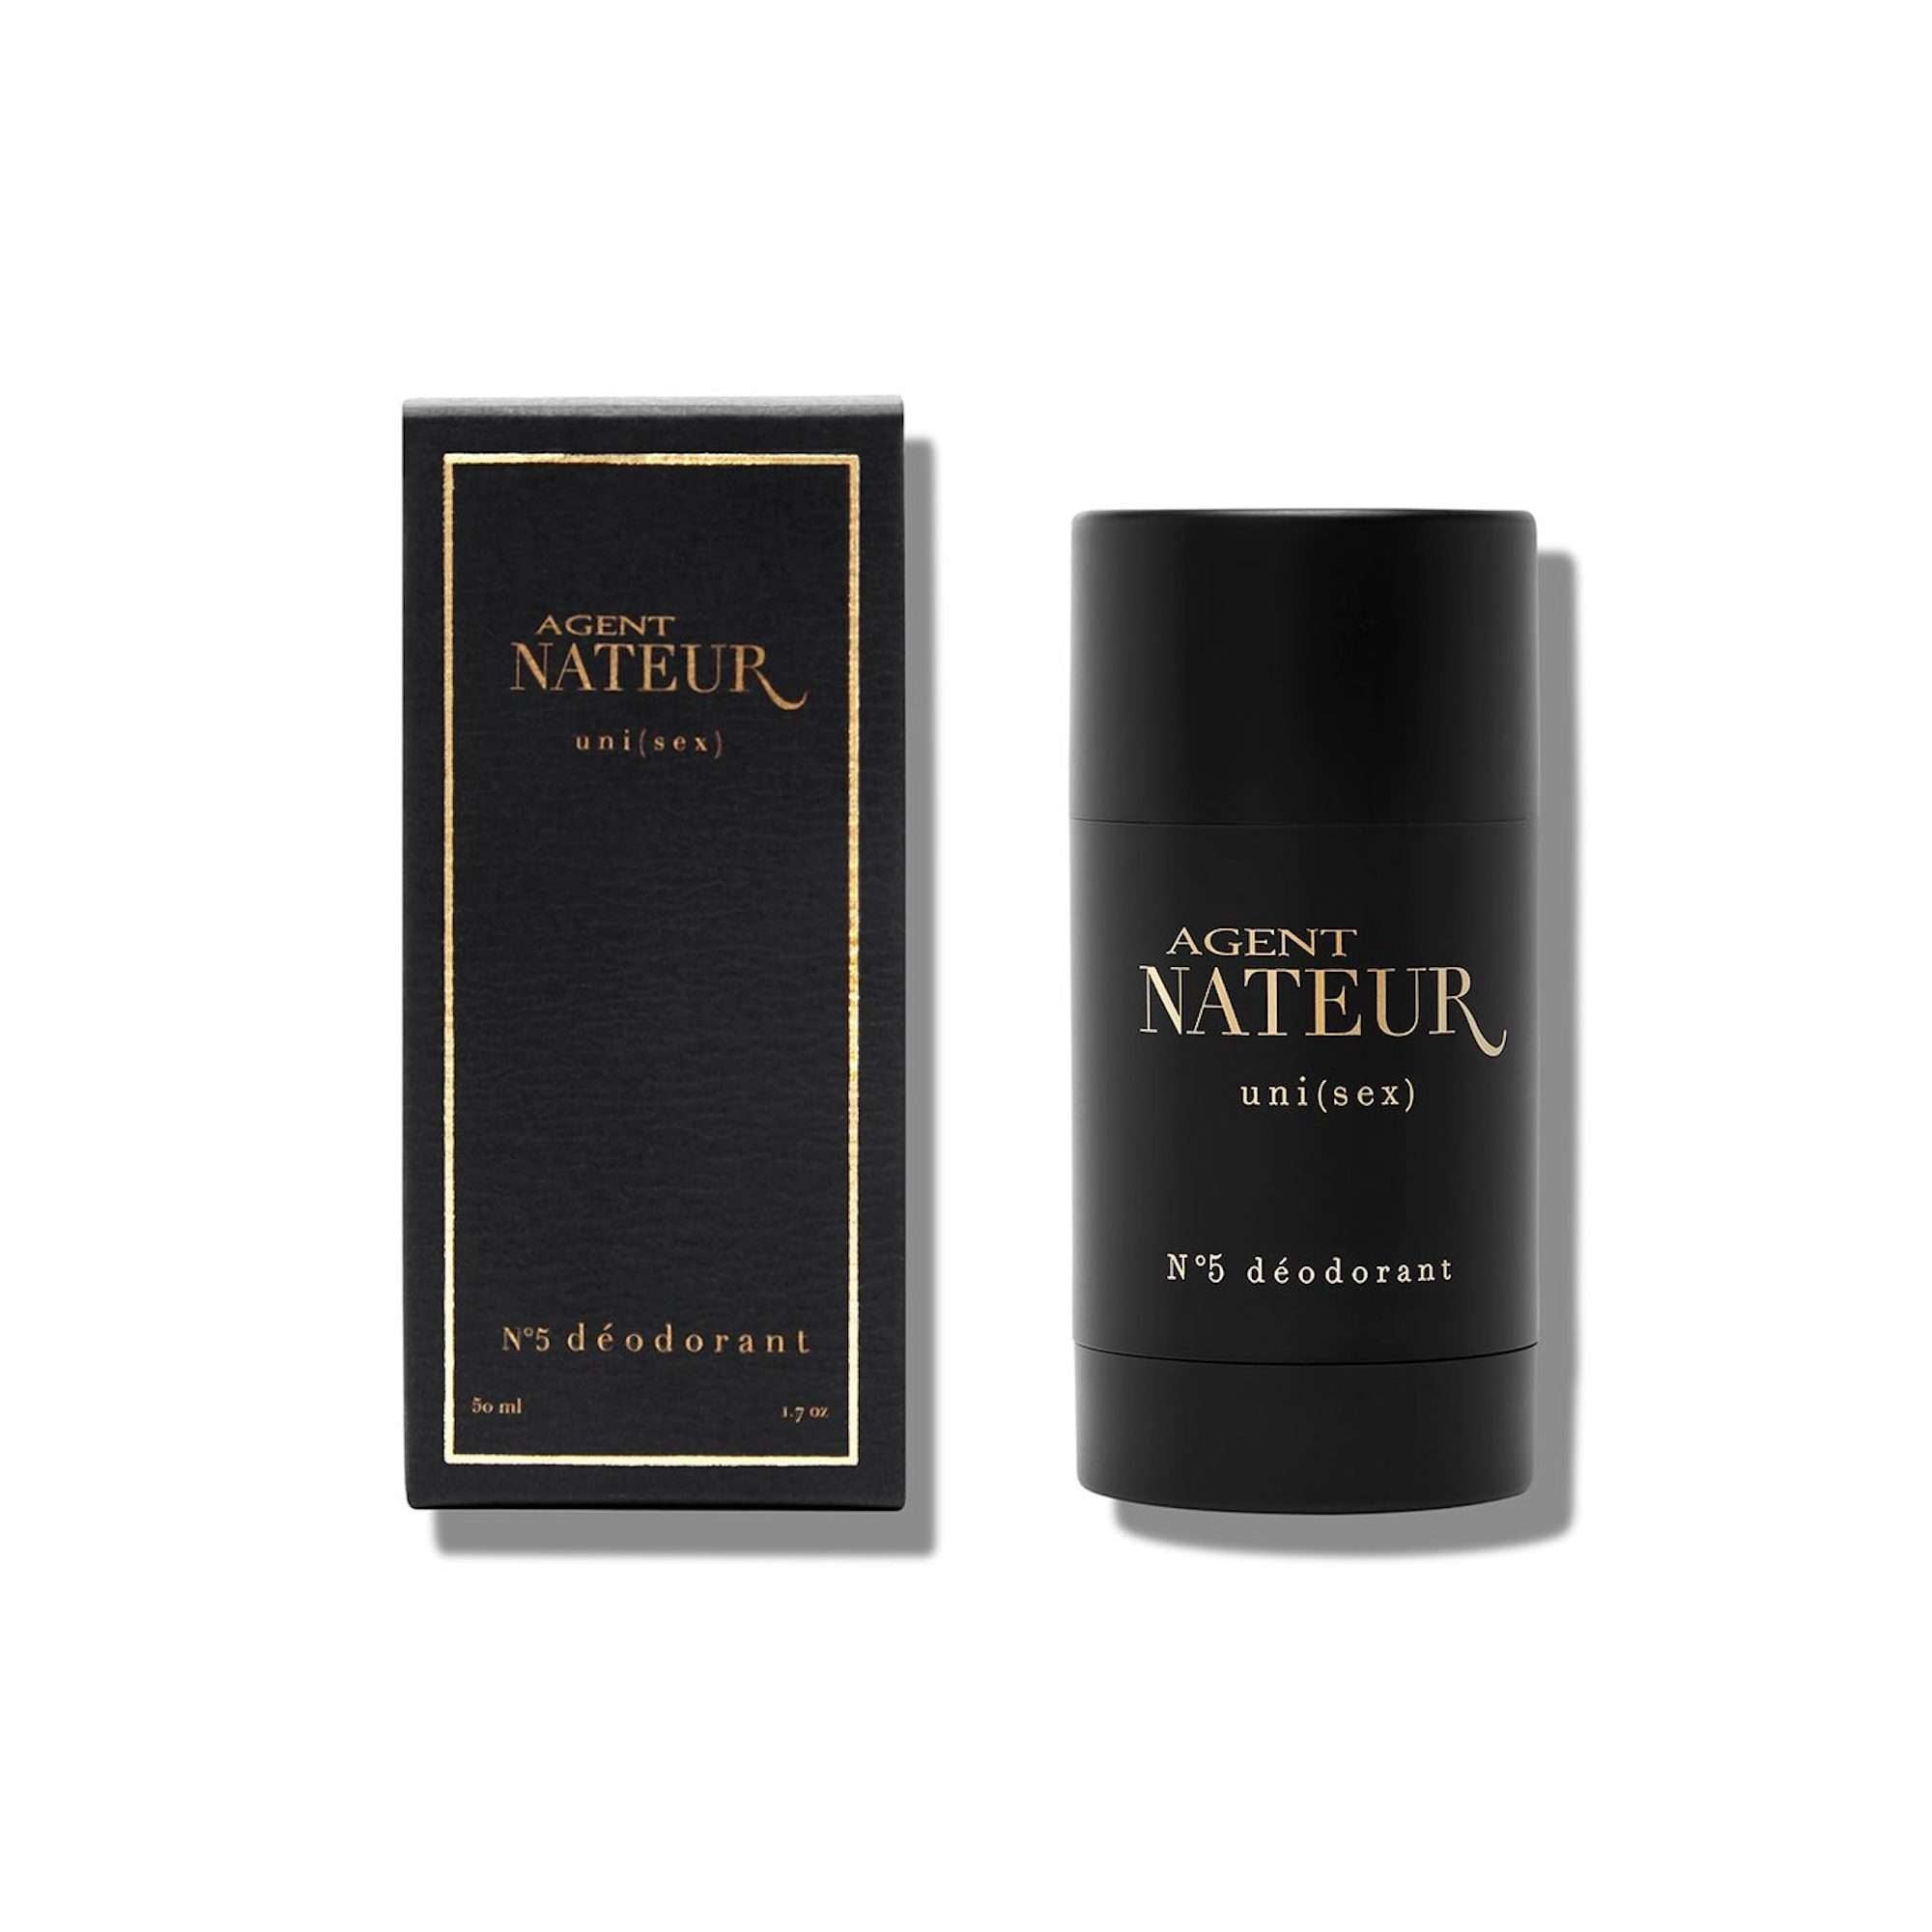 Agent Nateur Uni (Sex) No.5 Deodorant at Socialite Beauty Canada